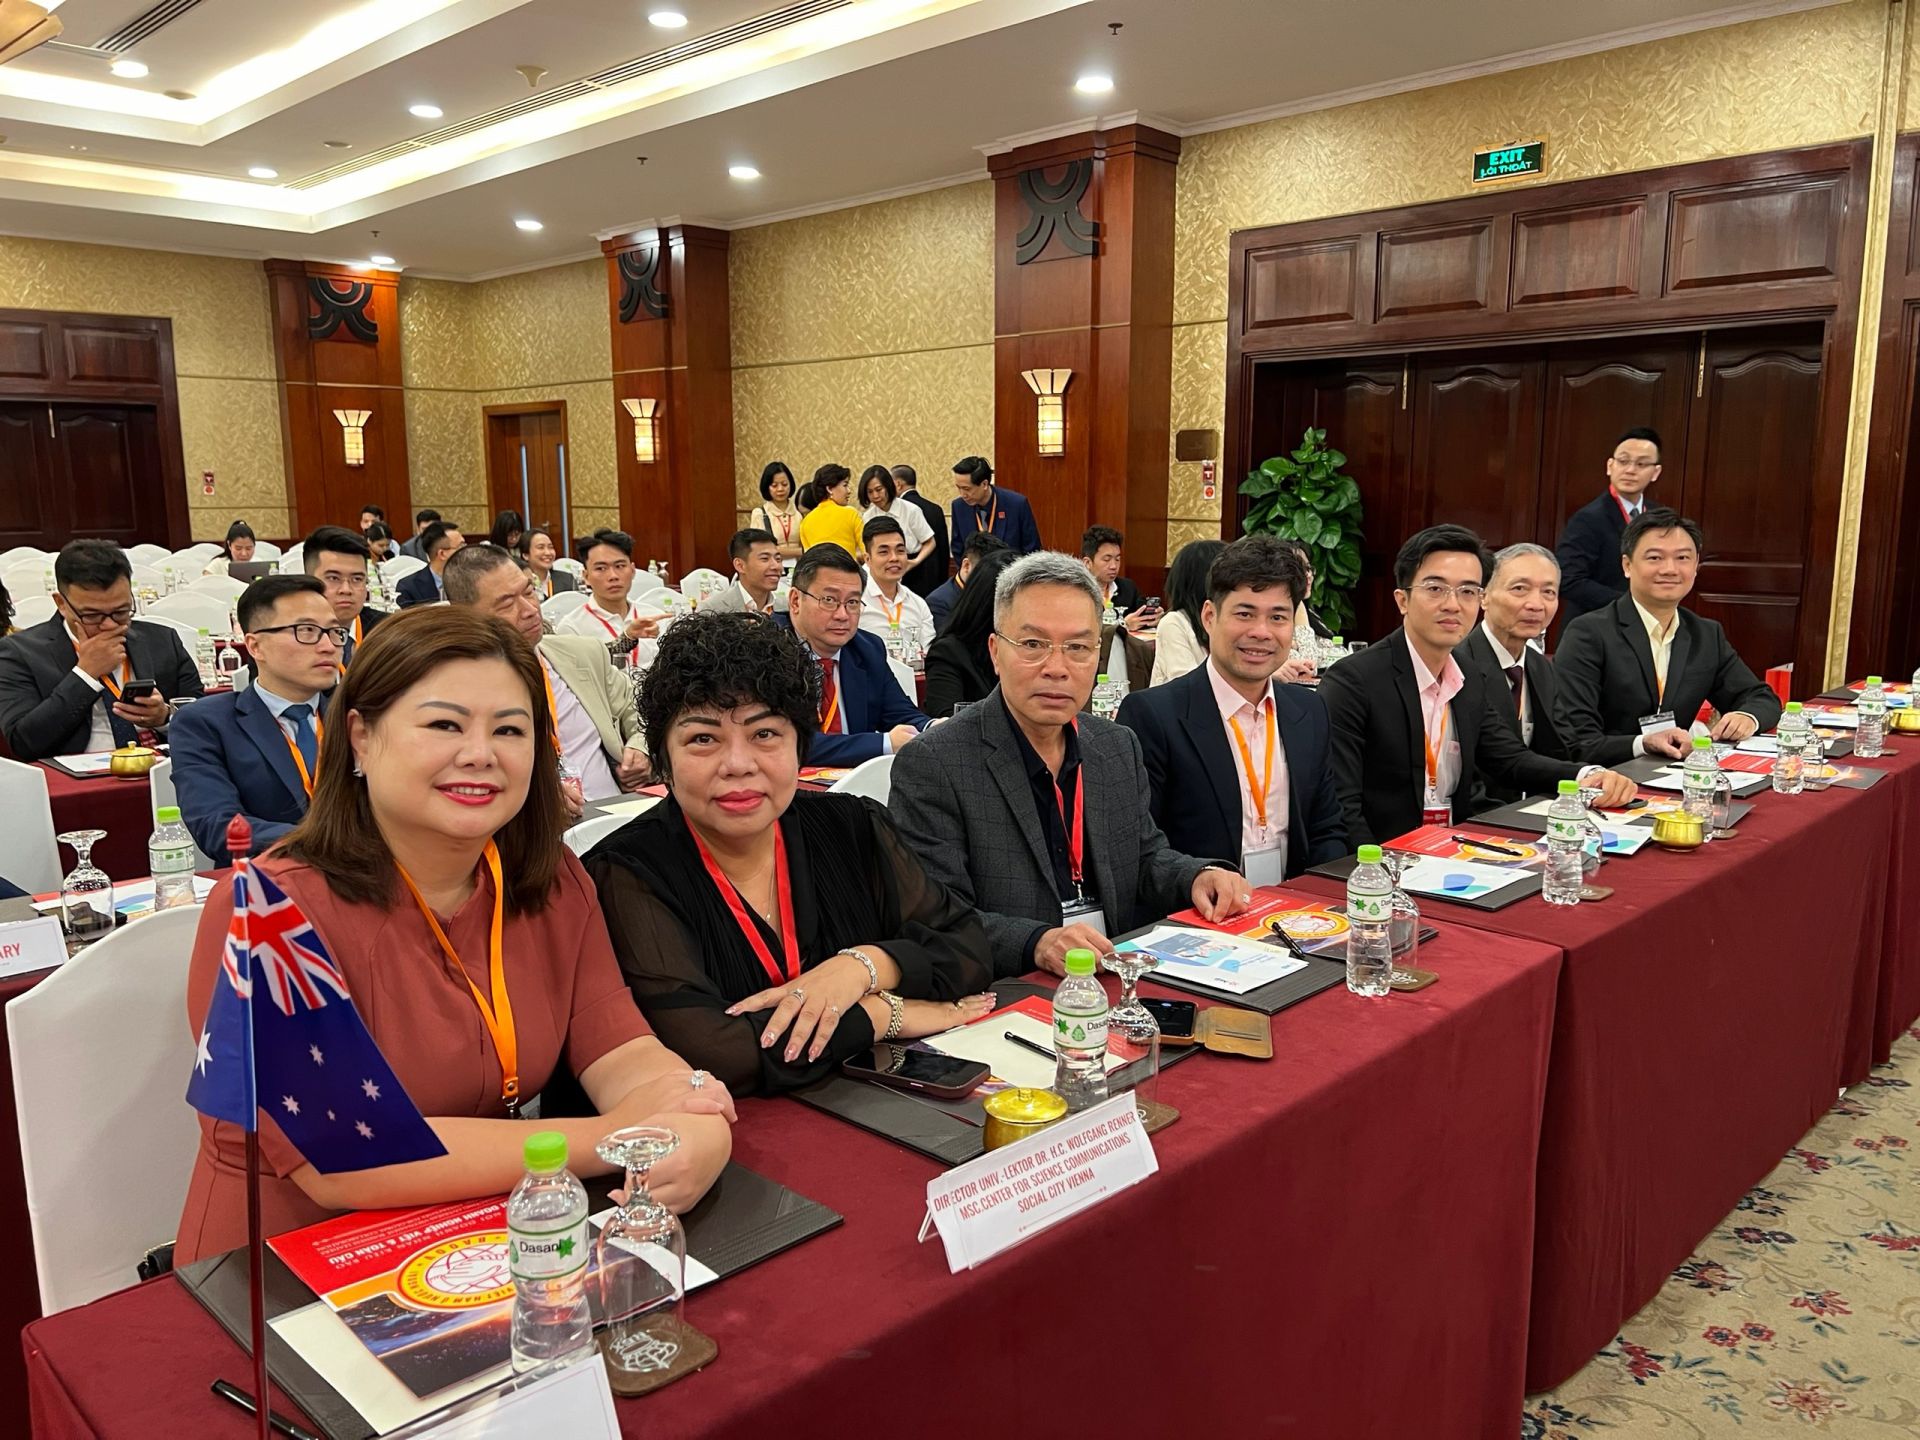 Đoàn hiệp hội doanh nghiệp Việt Nam ở Australia tham dự đại hội